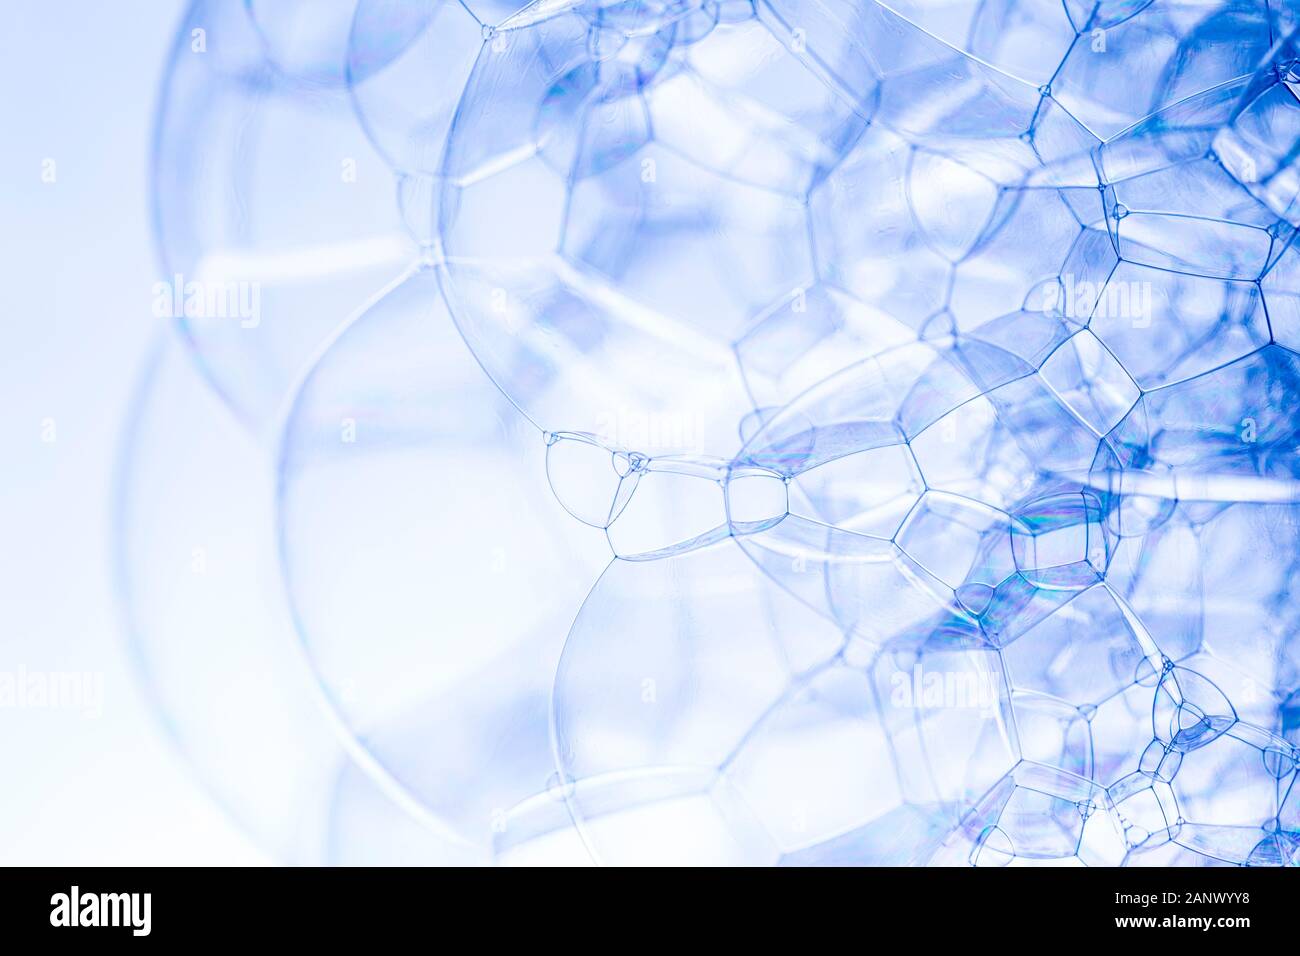 Kreative Zusammenfassung Hintergrund der Kette von Bläschen Struktur in dunklen Blautönen gemacht Stockfoto